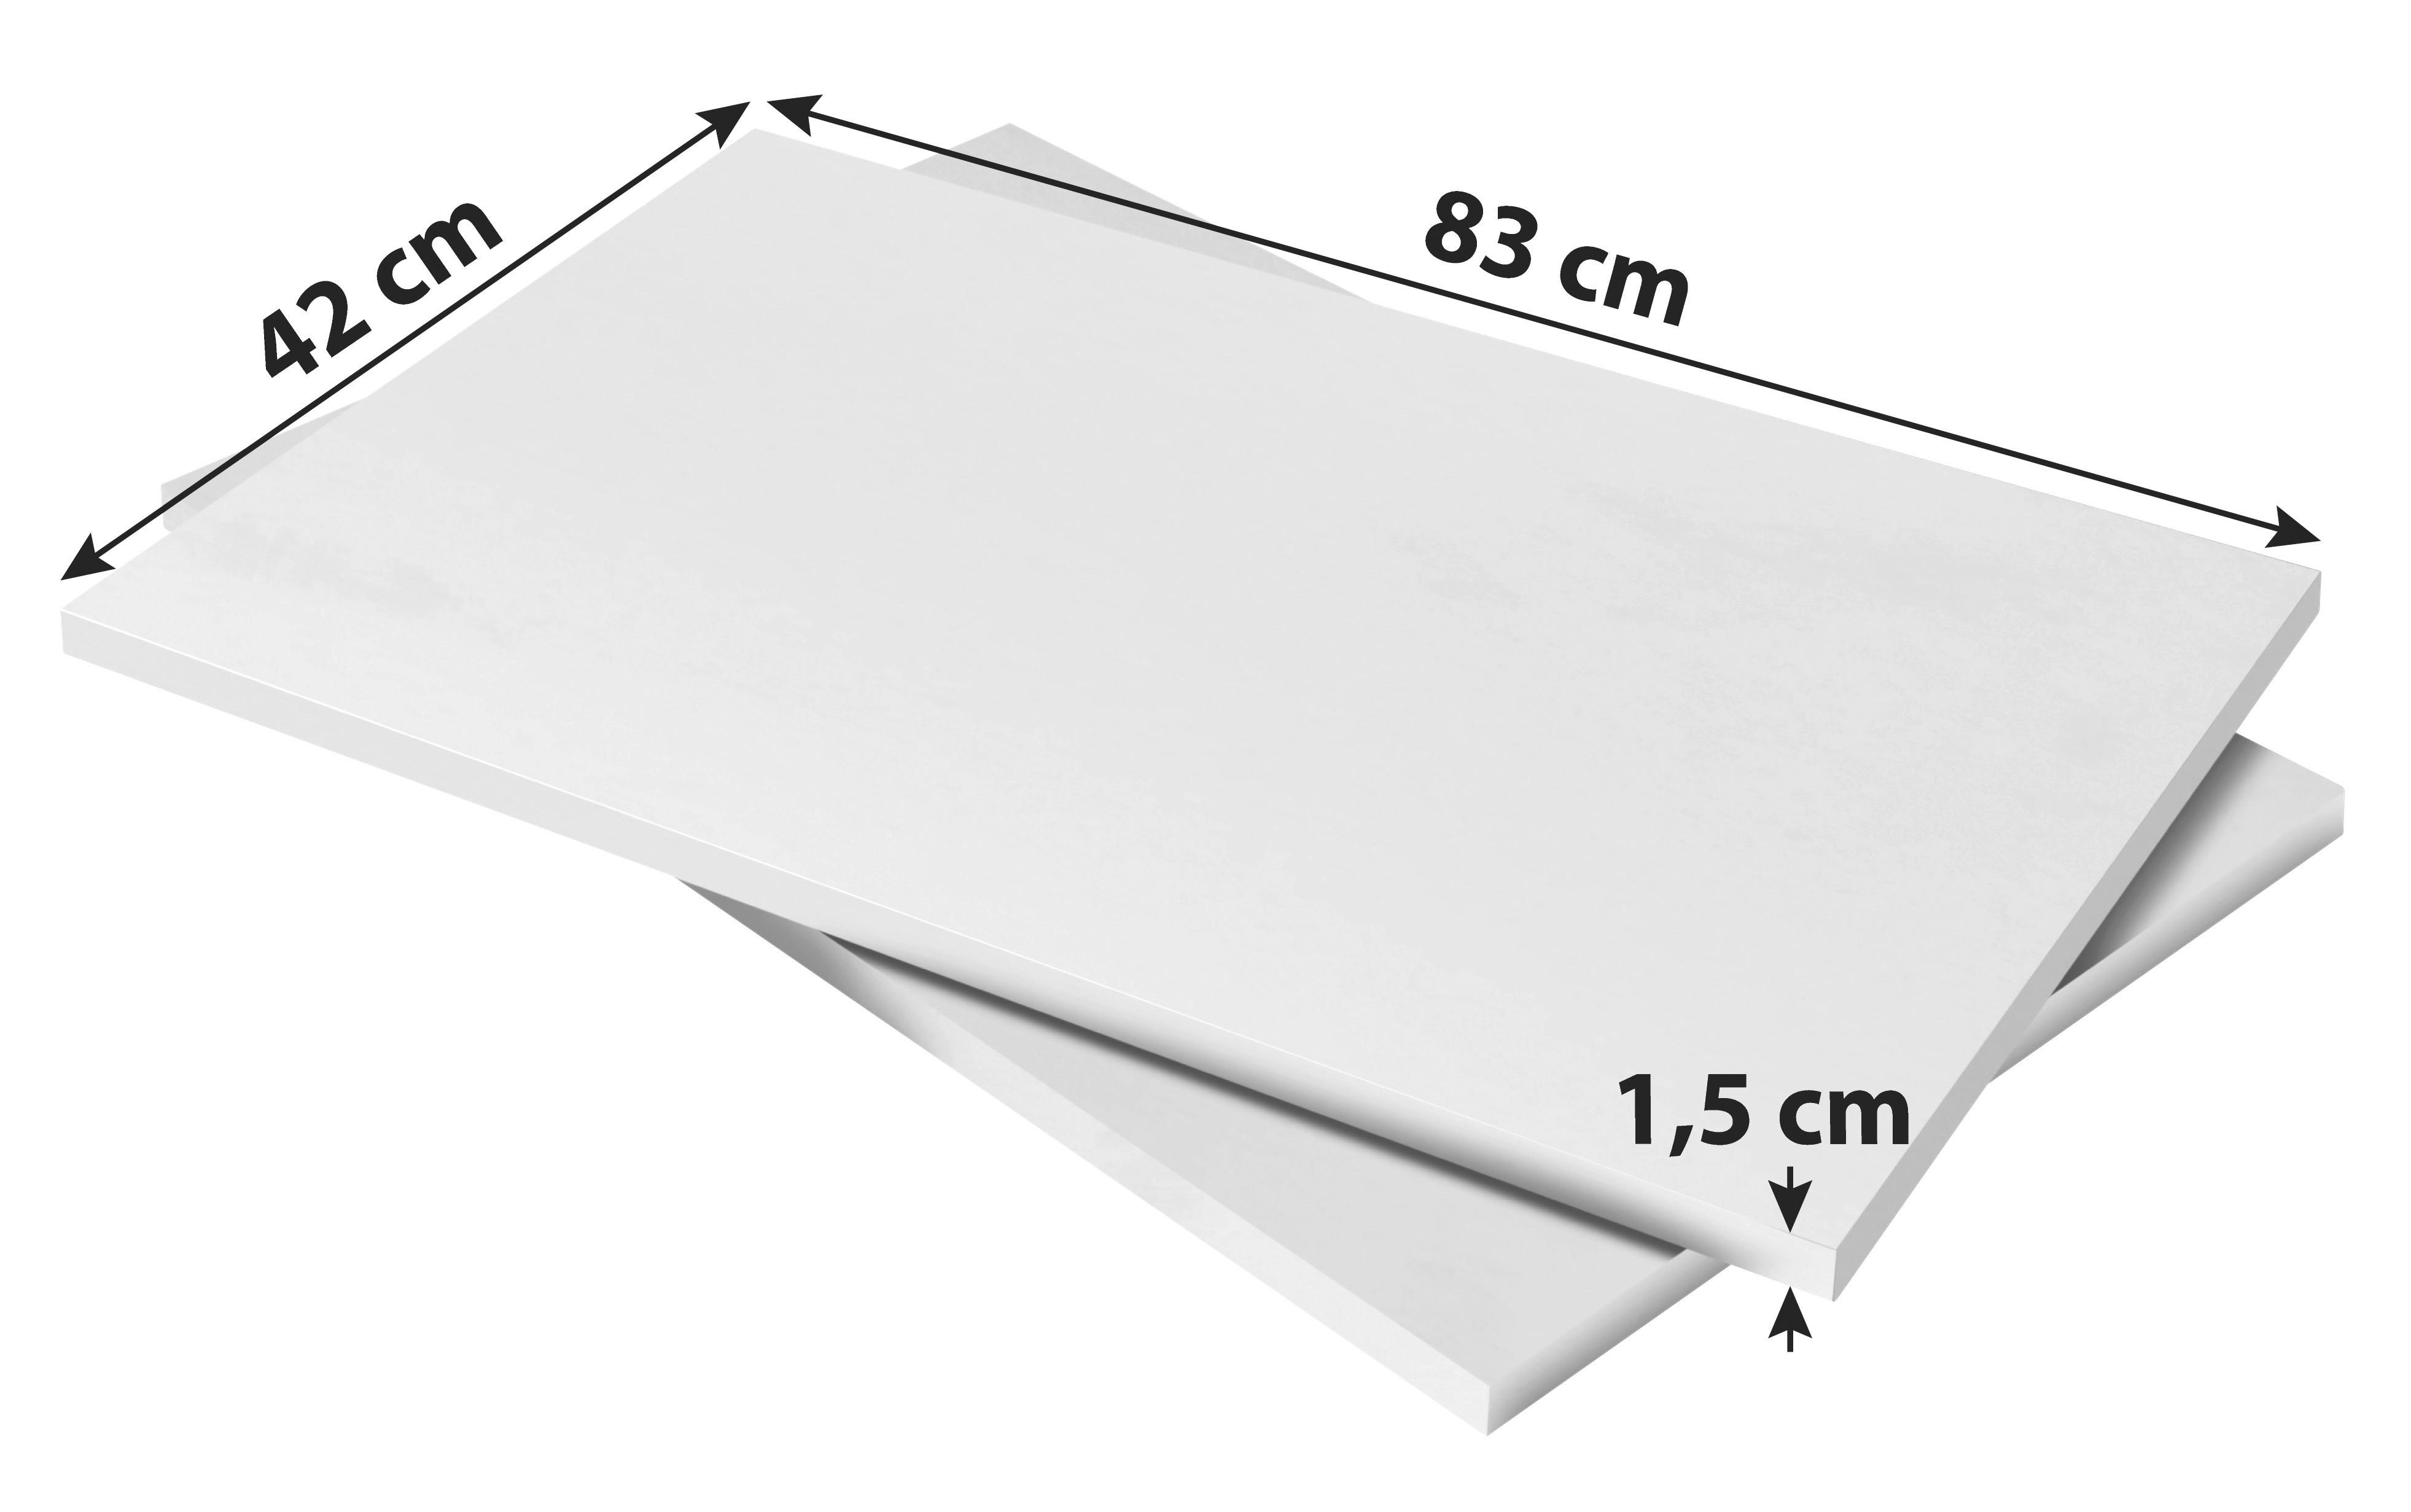 EINLEGEBODENSET 2-teilig Weiß  - Weiß (83/1,5/42cm) - Carryhome